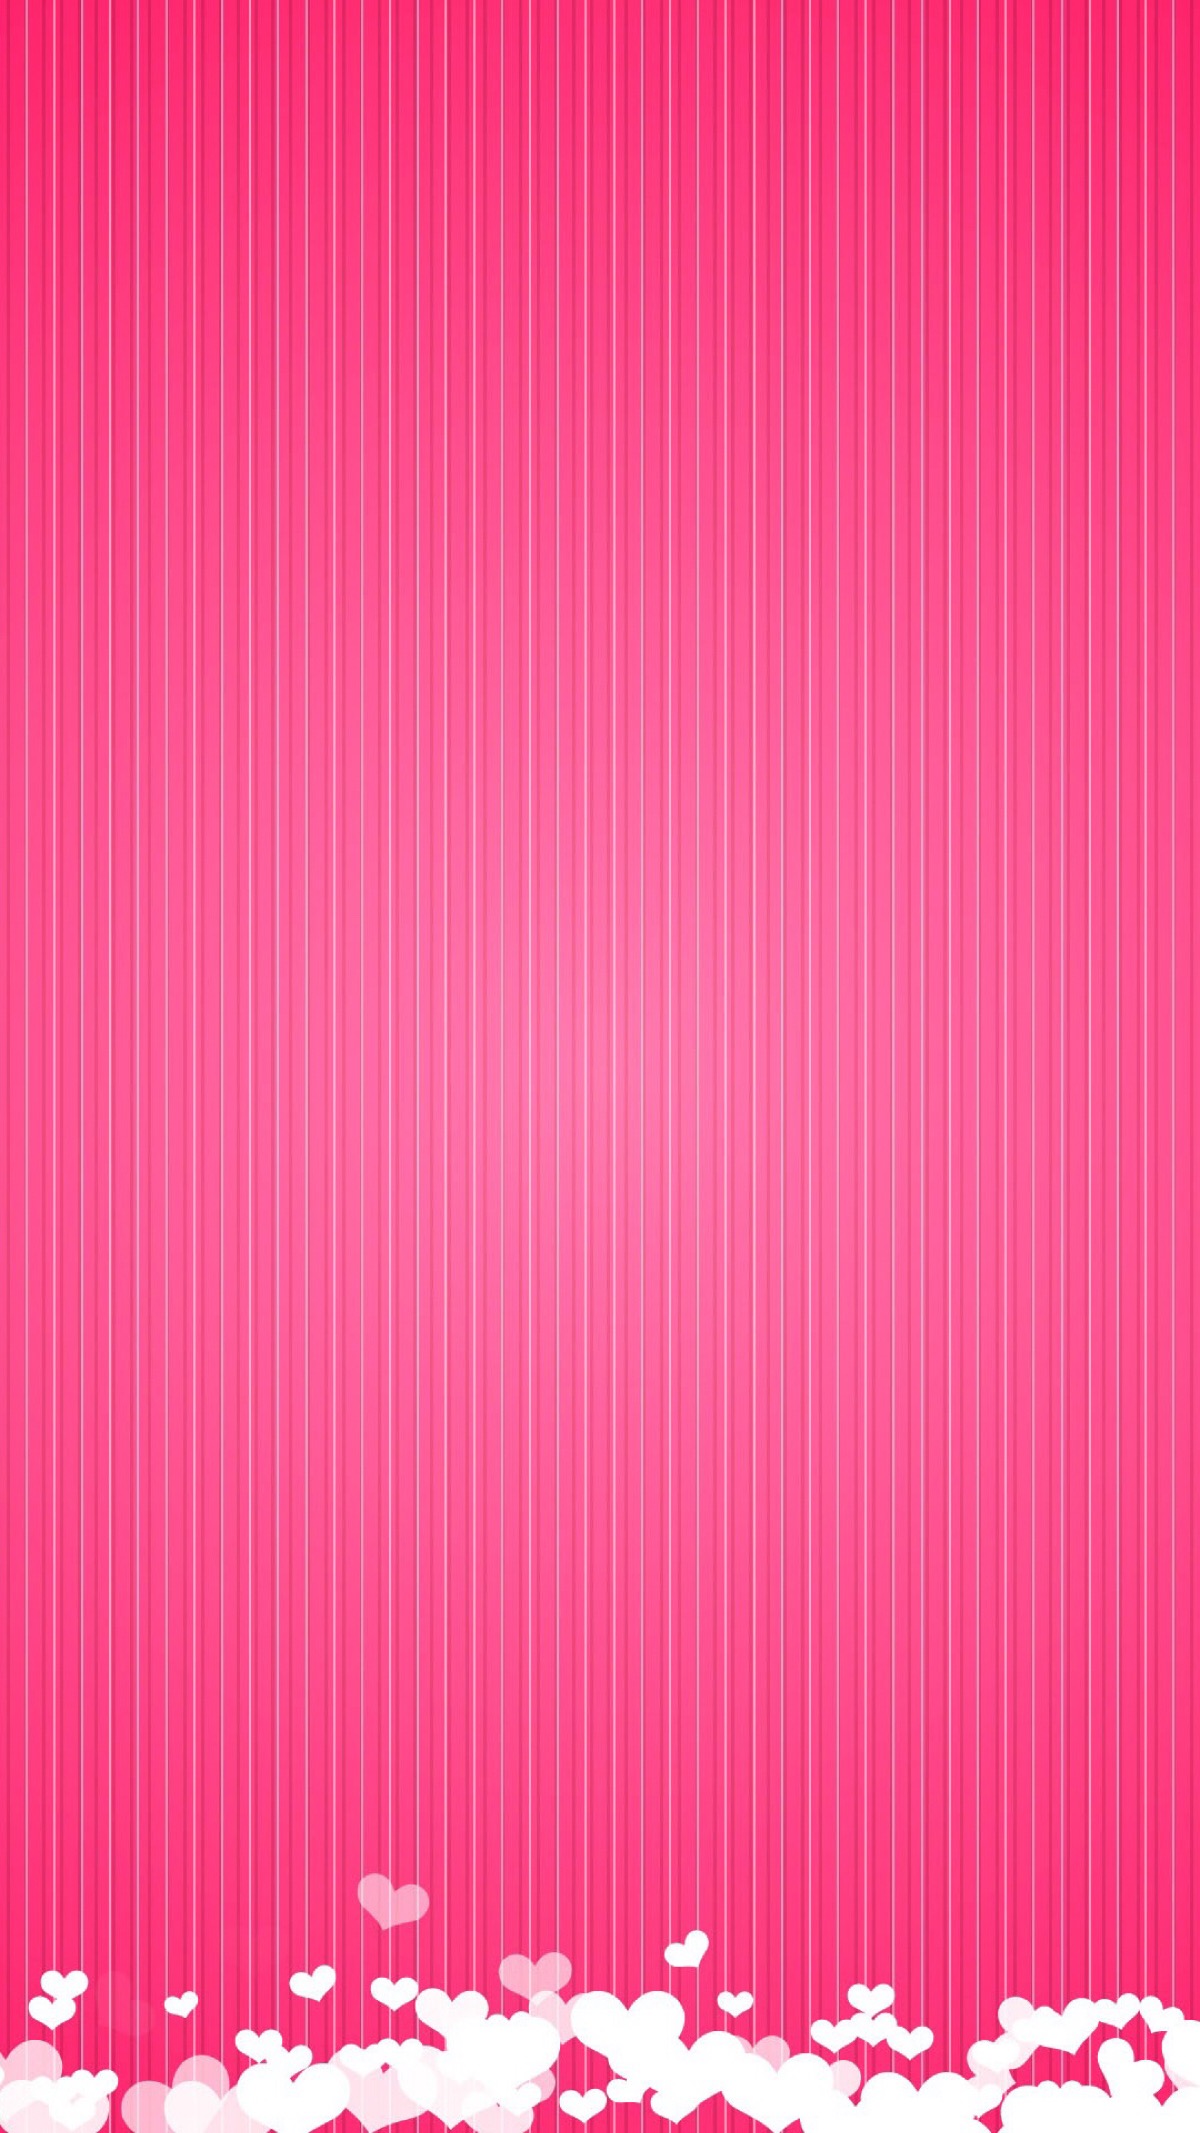 粉色背景图纯色竖屏图片